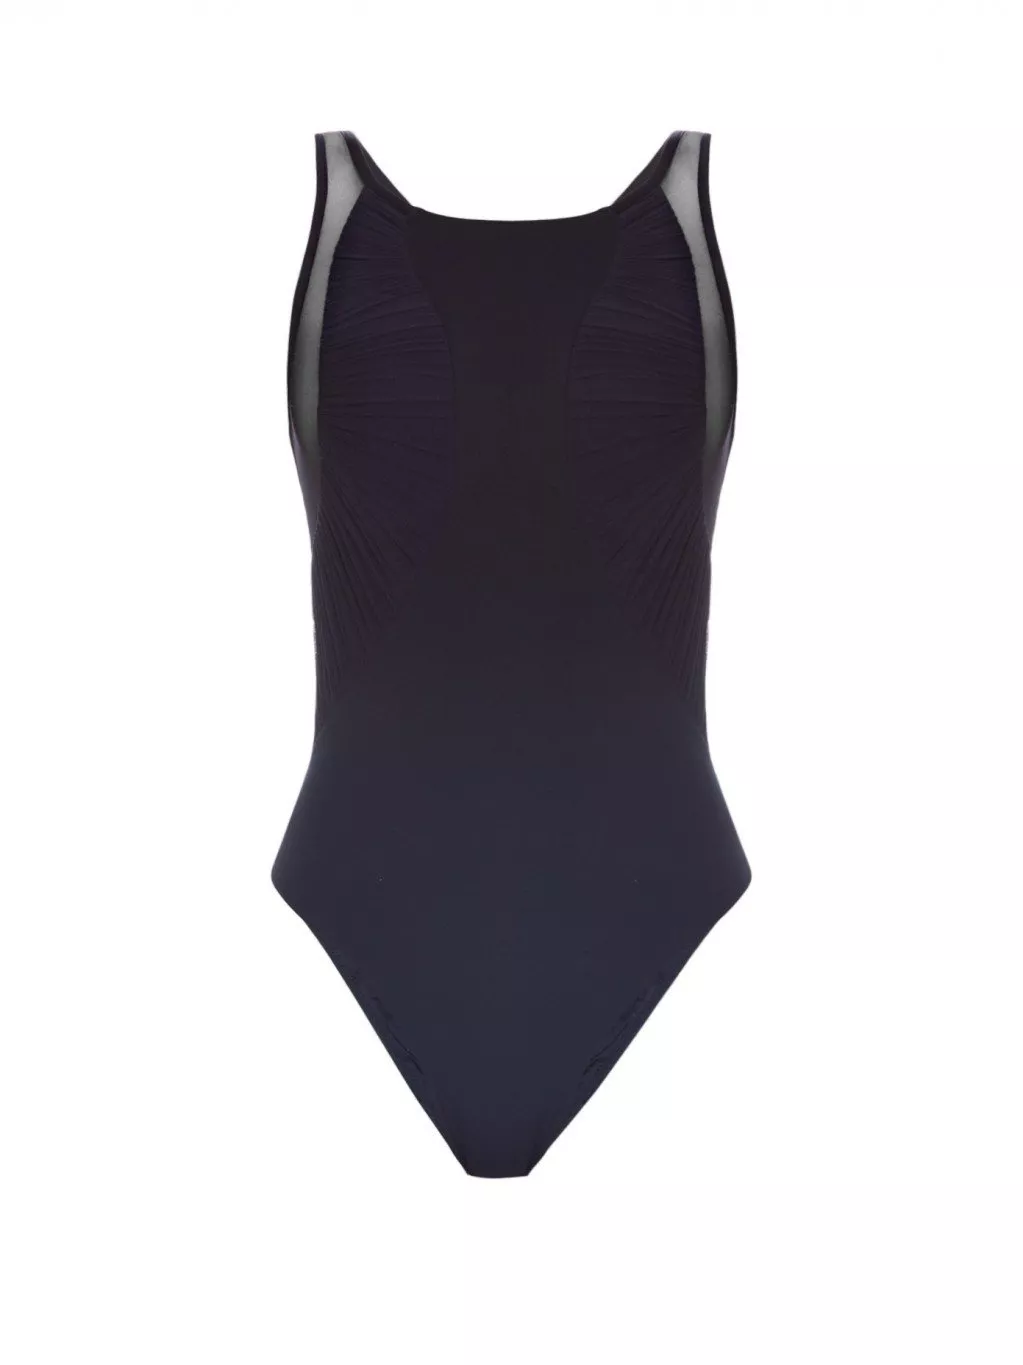 25 تصميم ثوب سباحة يمكنكِ اعتمادها كبودي سوت في إطلالاتكِ اليومية في صيف 2016